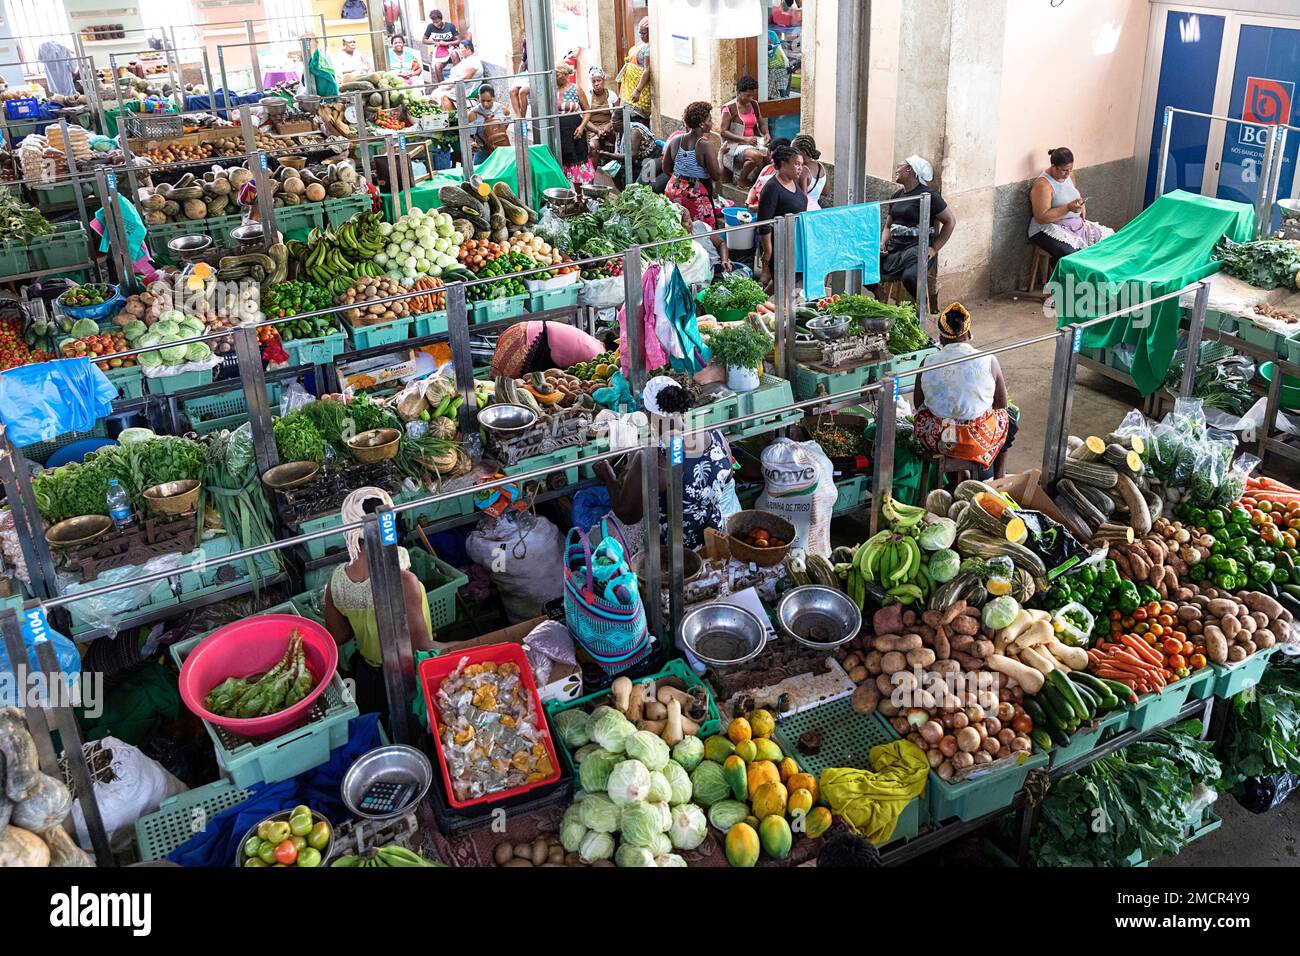 Stände mit frischem Obst und Gemüse zum Verkauf auf dem belebten Indoor-Lebensmittelmarkt in der Stadt Praia auf der Insel Santiago, Kap Verde / Cabo Verde Stockfoto